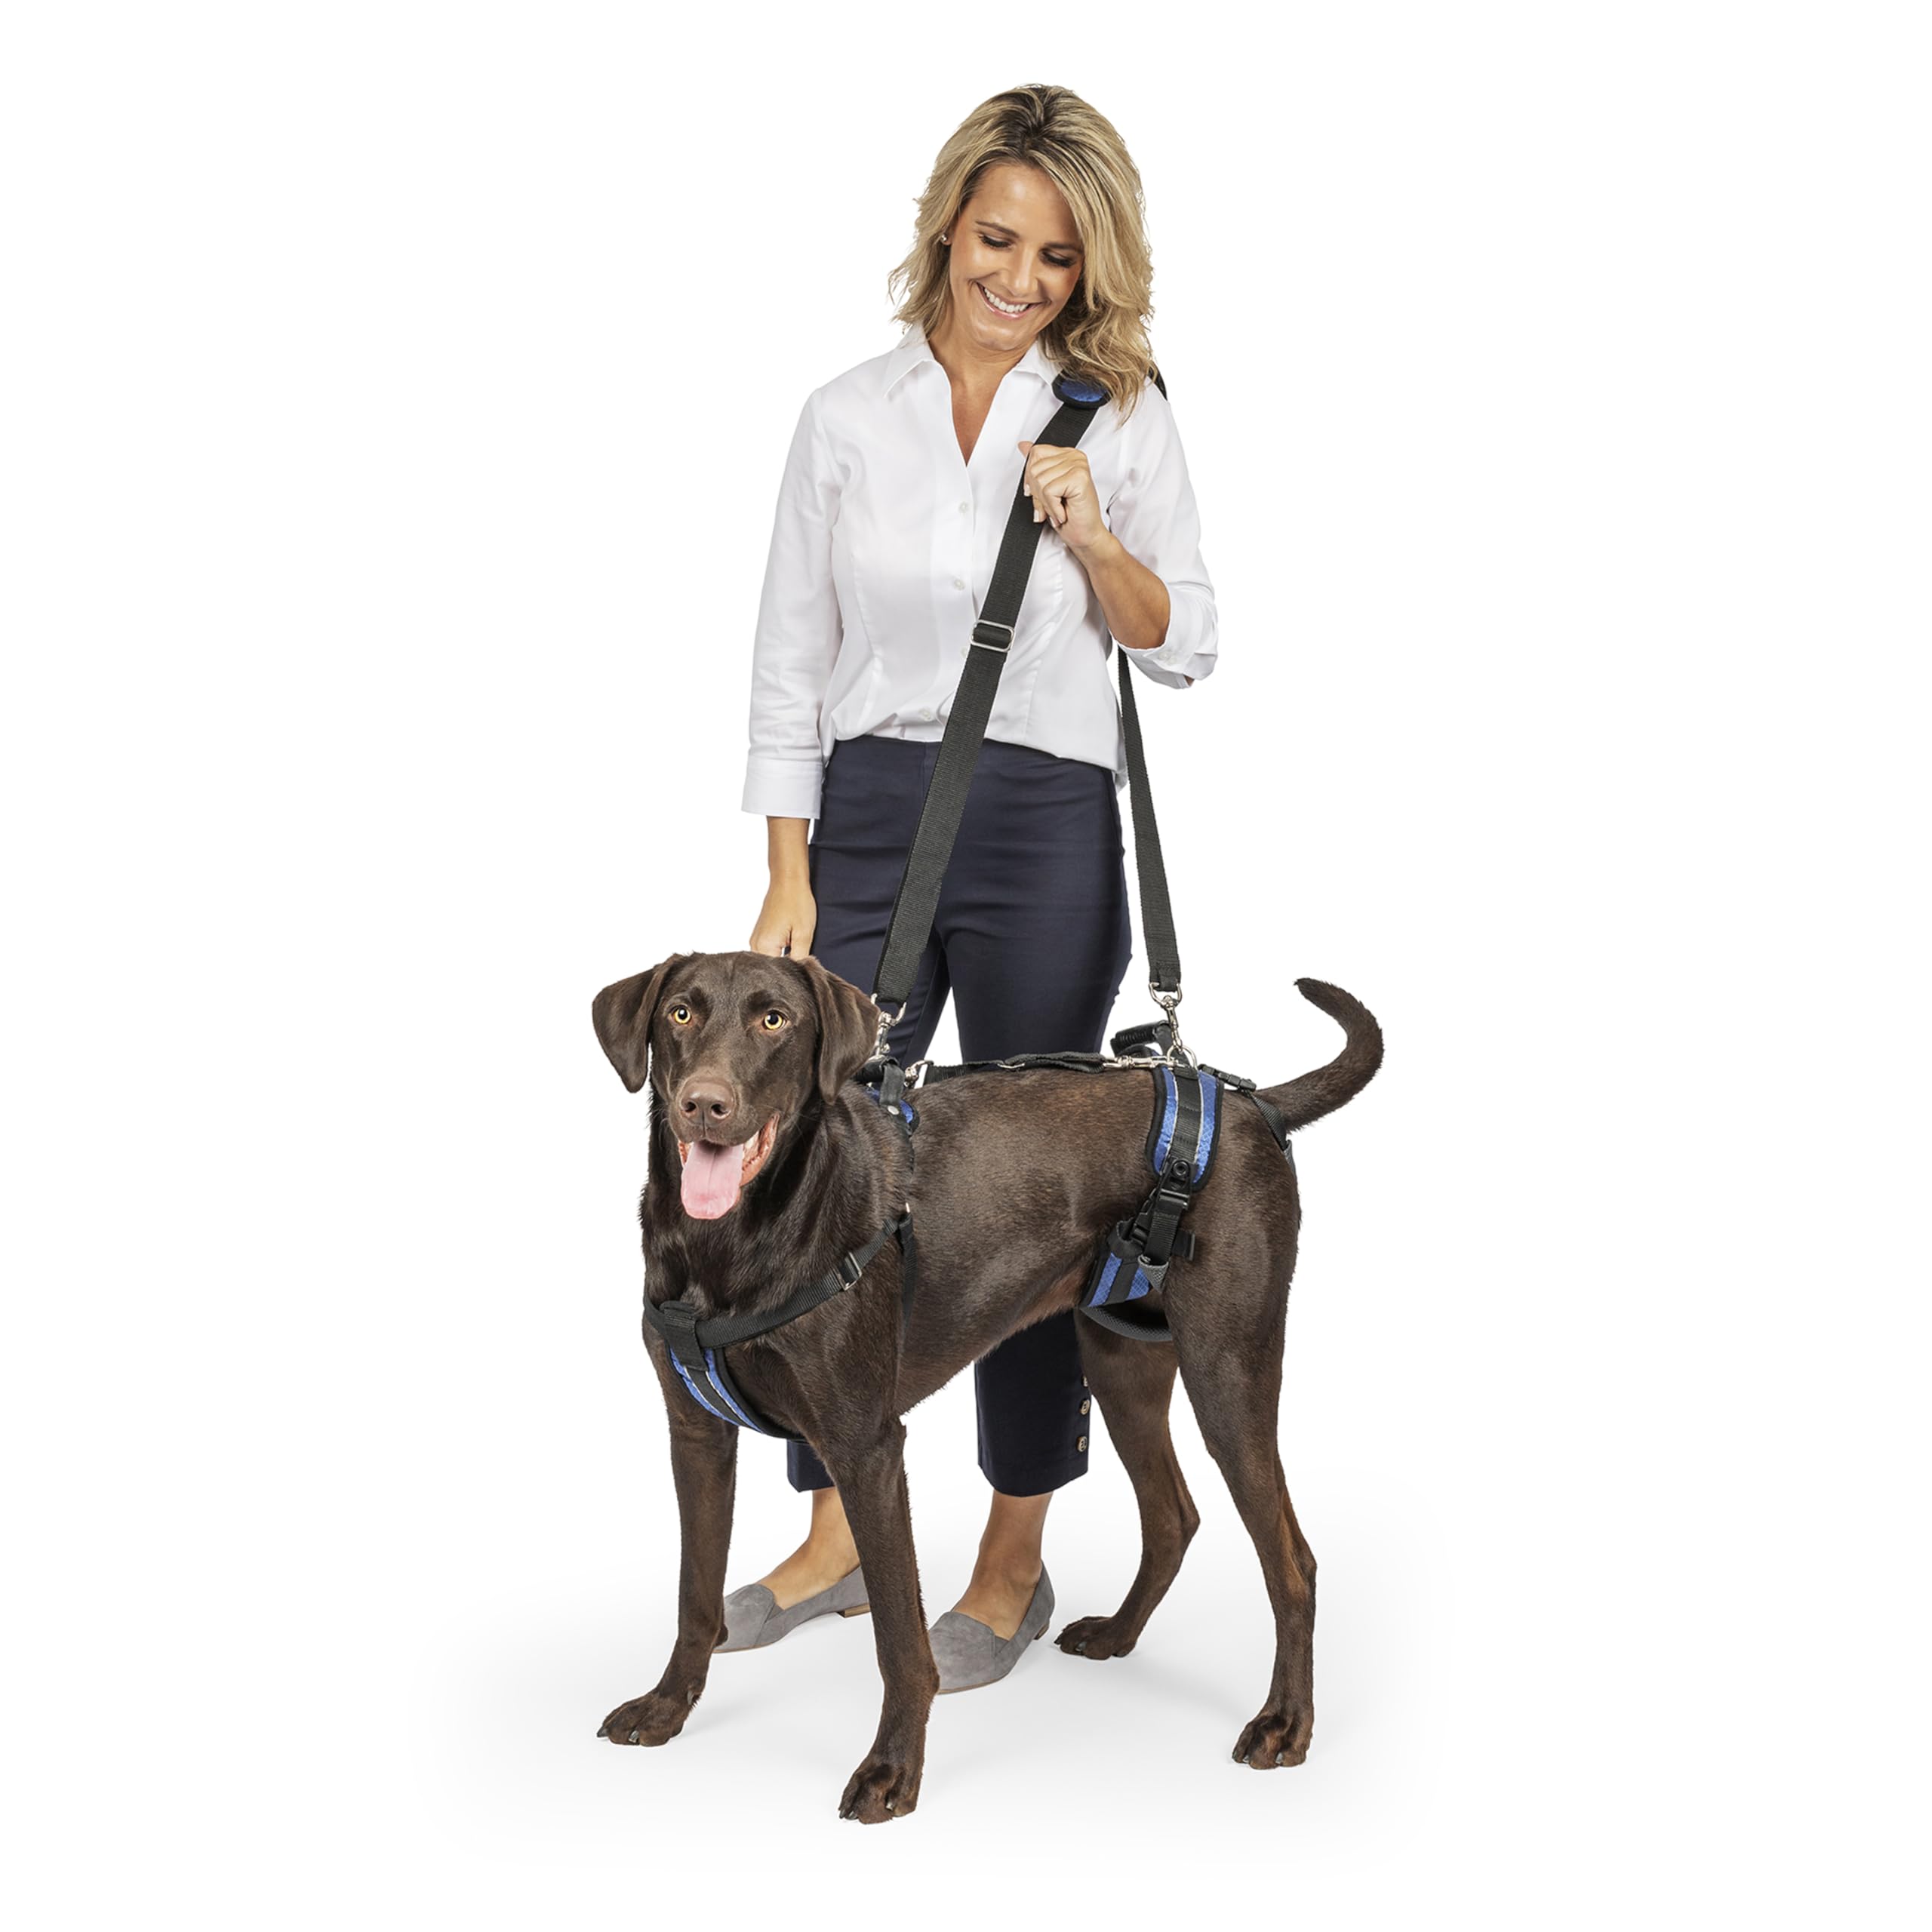 PetSafe CareLift Hebegeschirr für Hunde, Ganzkörperhebehilfe mit Griff und Schultergurt, Brust- und Hüfthebung, Größe L